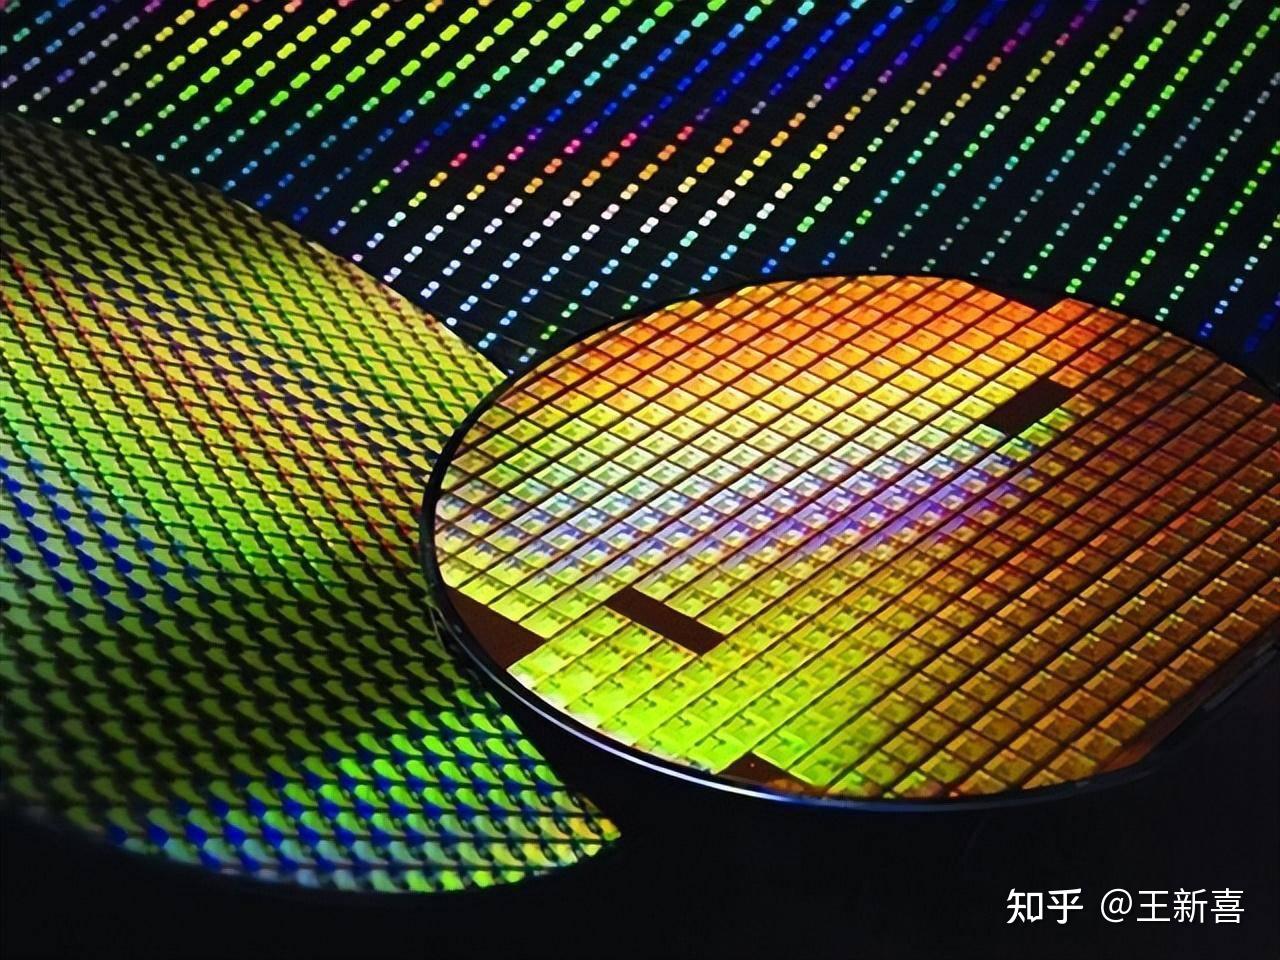 日美合作开发2纳米芯片一事提上日程-99科技网